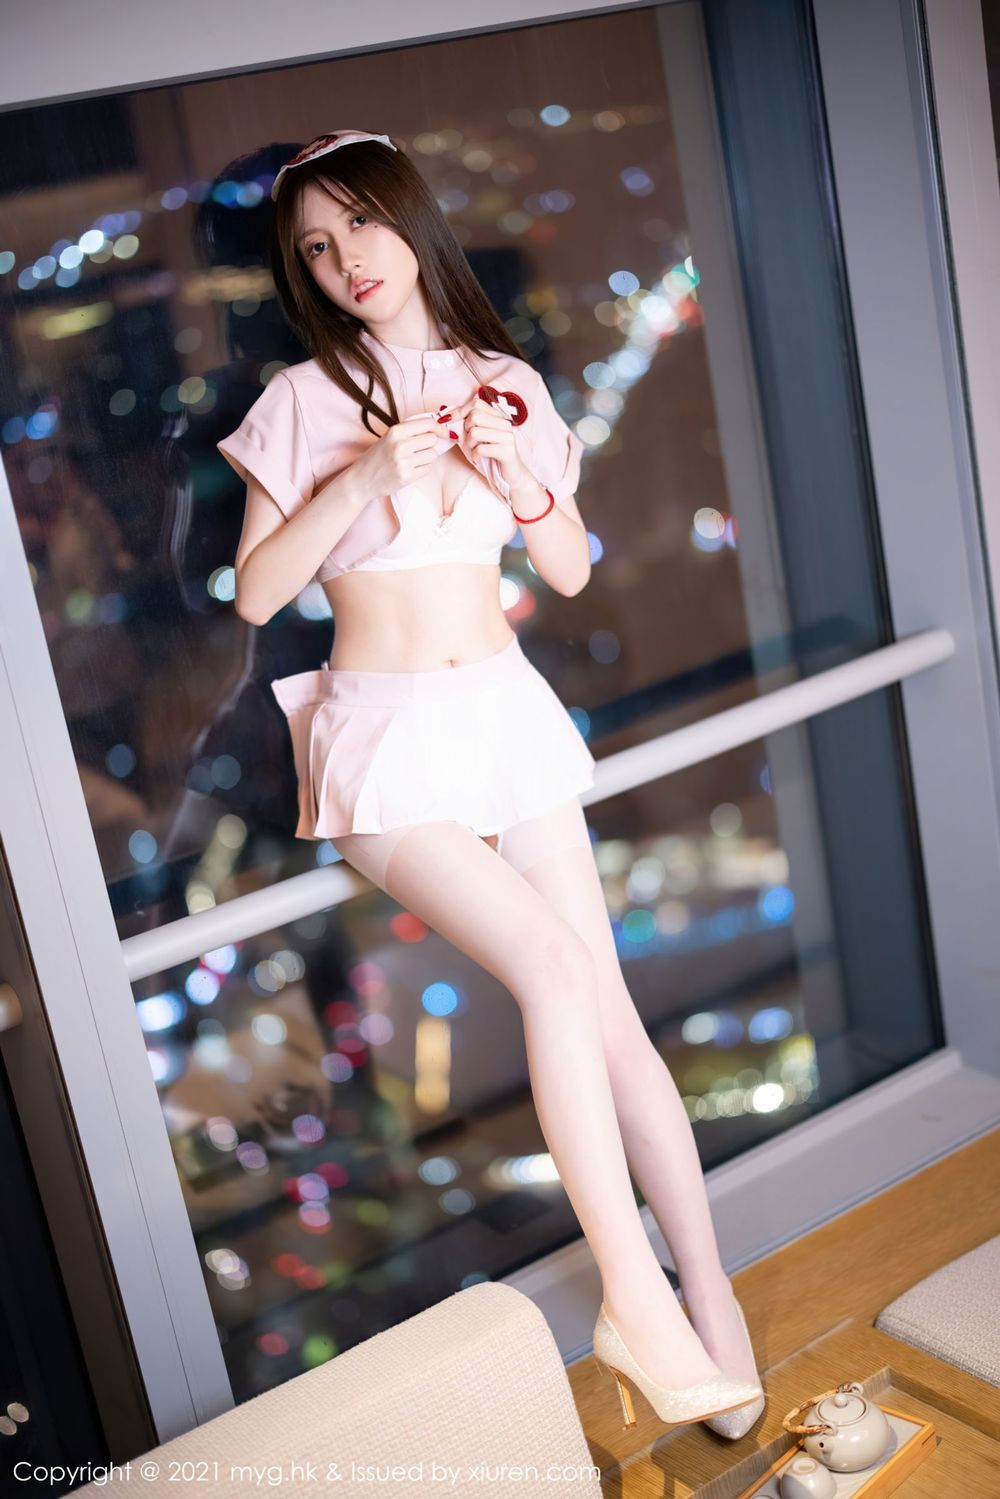 美女模特美桃酱 - 粉色护士制服系列长三角旅拍